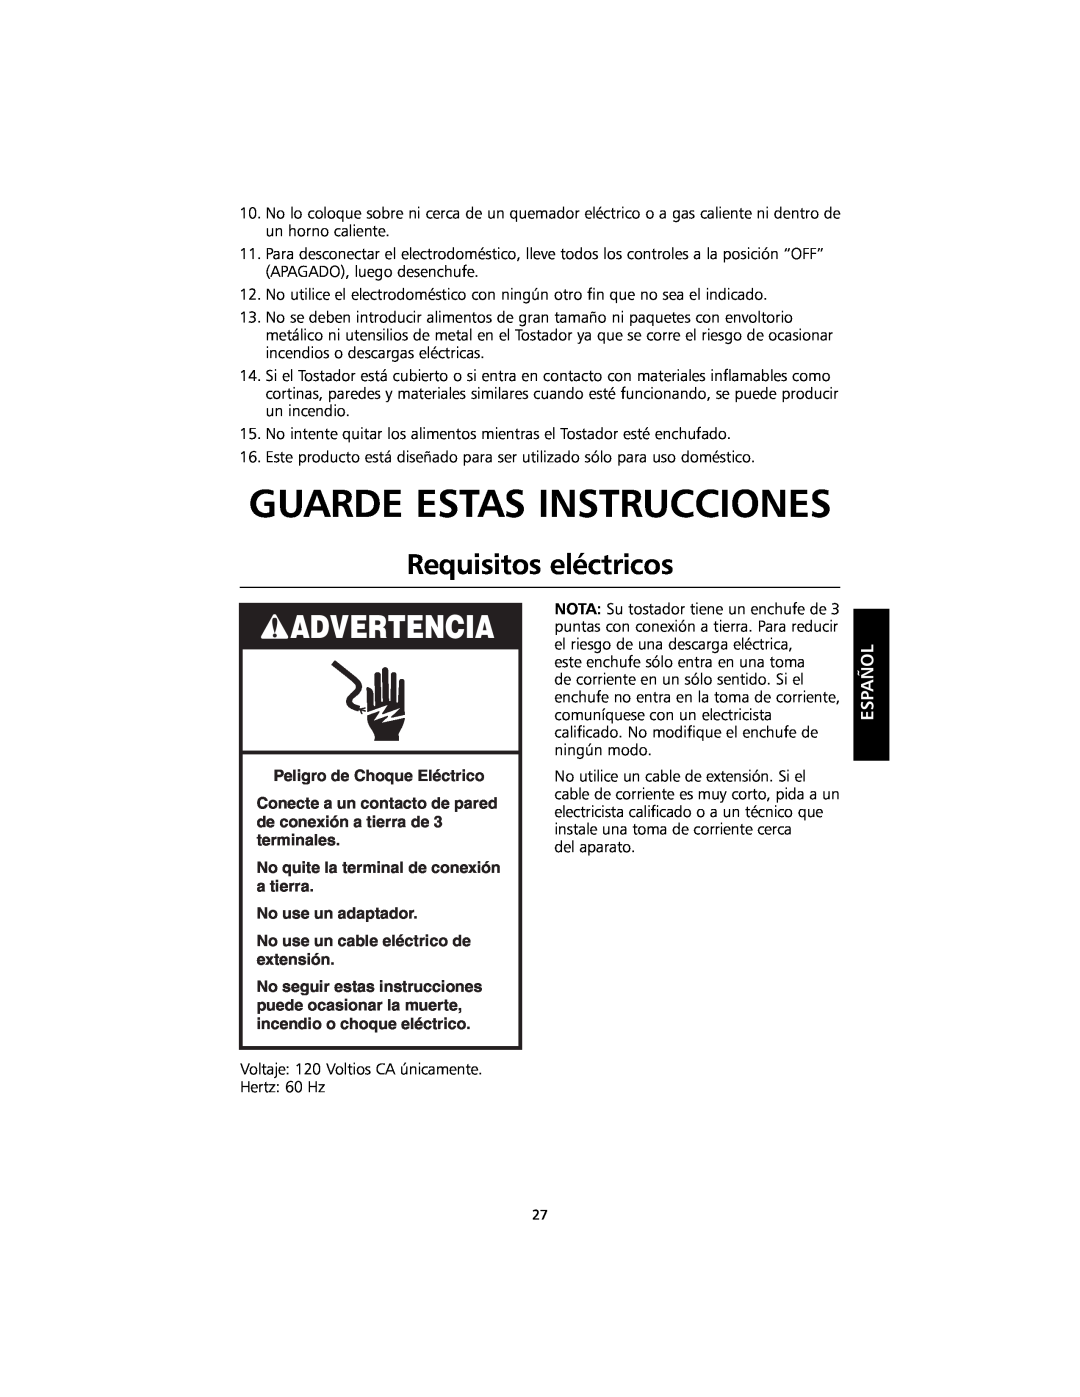 KitchenAid KMTT400 Guarde Estas Instrucciones, Requisitos eléctricos, Peligro de Choque Eléctrico, No use un adaptador 